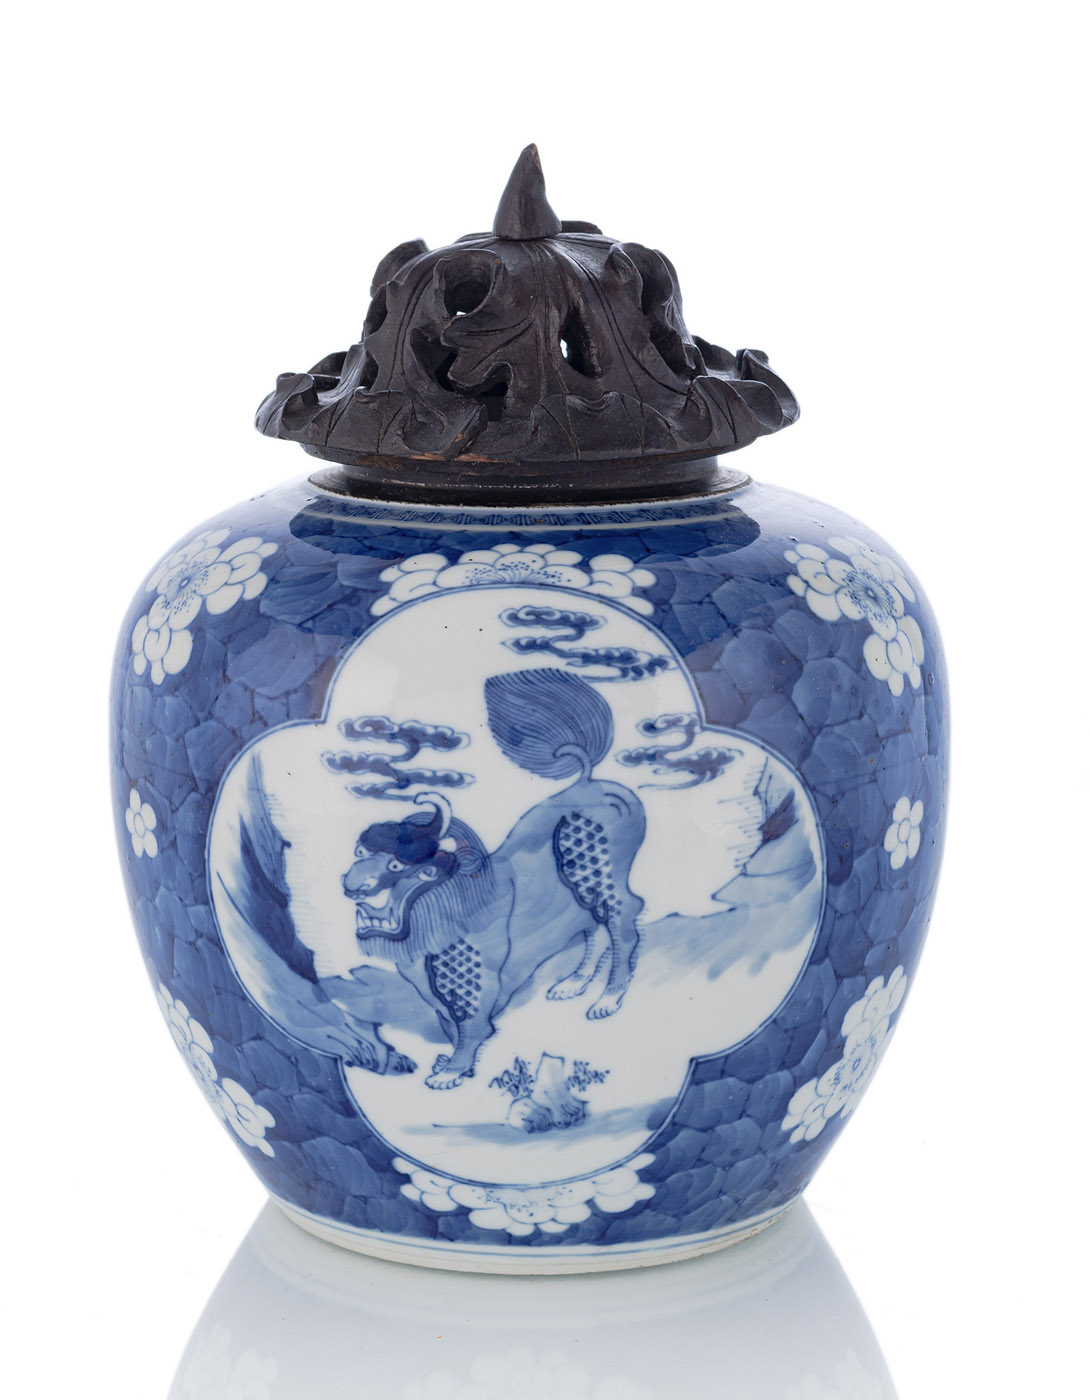 <b>Unterglasurblau dekoriertes Gefäß mit Reservendekor mit Qilin auf Pflaumenblüten-Fond</b>